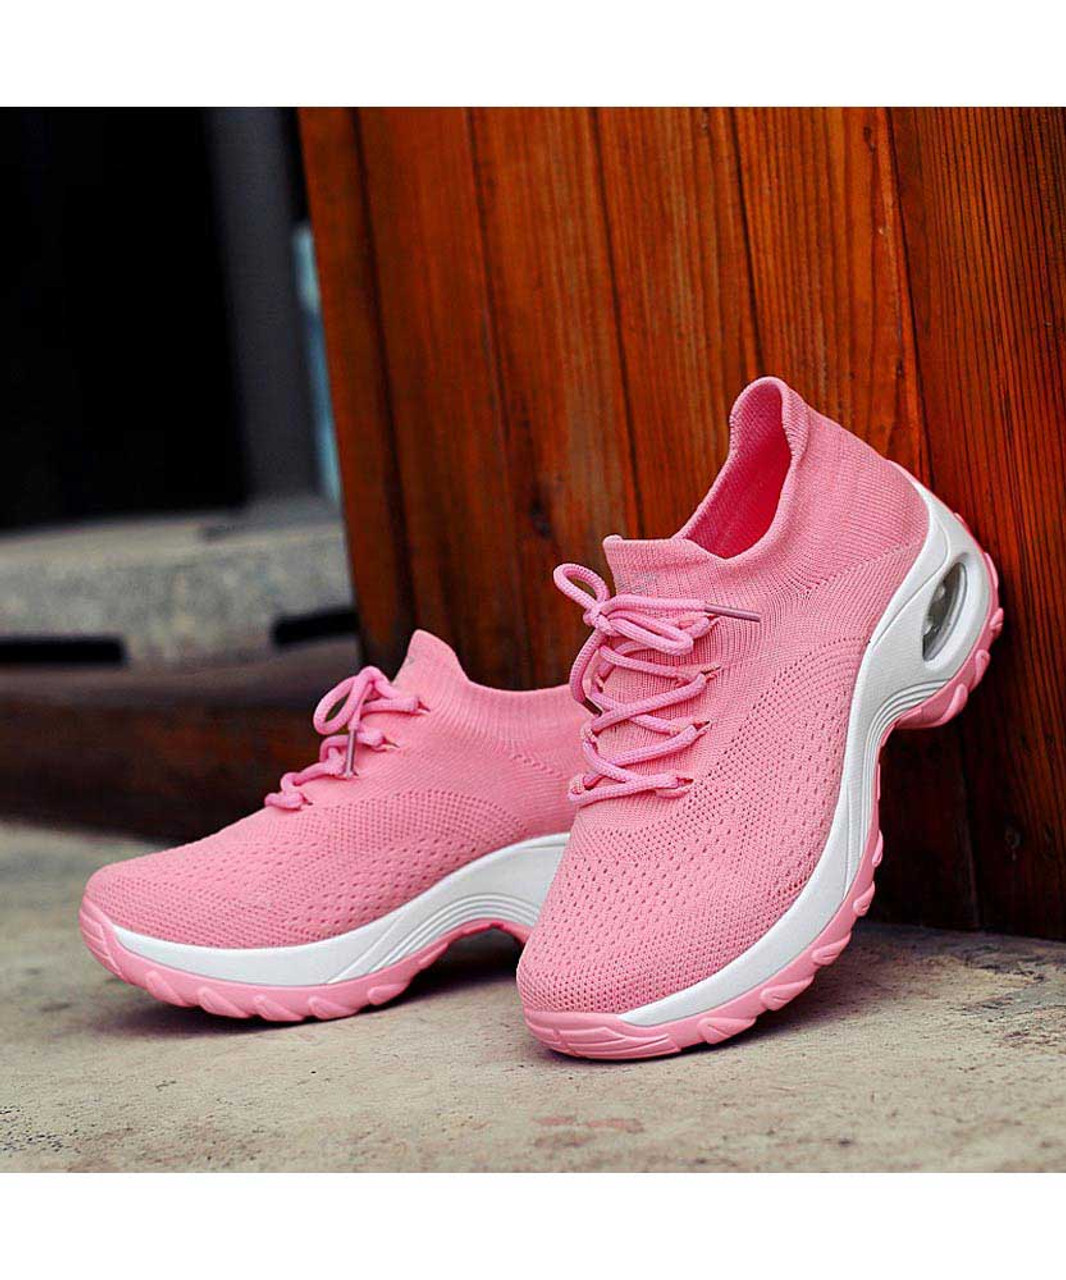 Pink sock like entry double rocker bottom shoe sneaker | Womens rocker ...